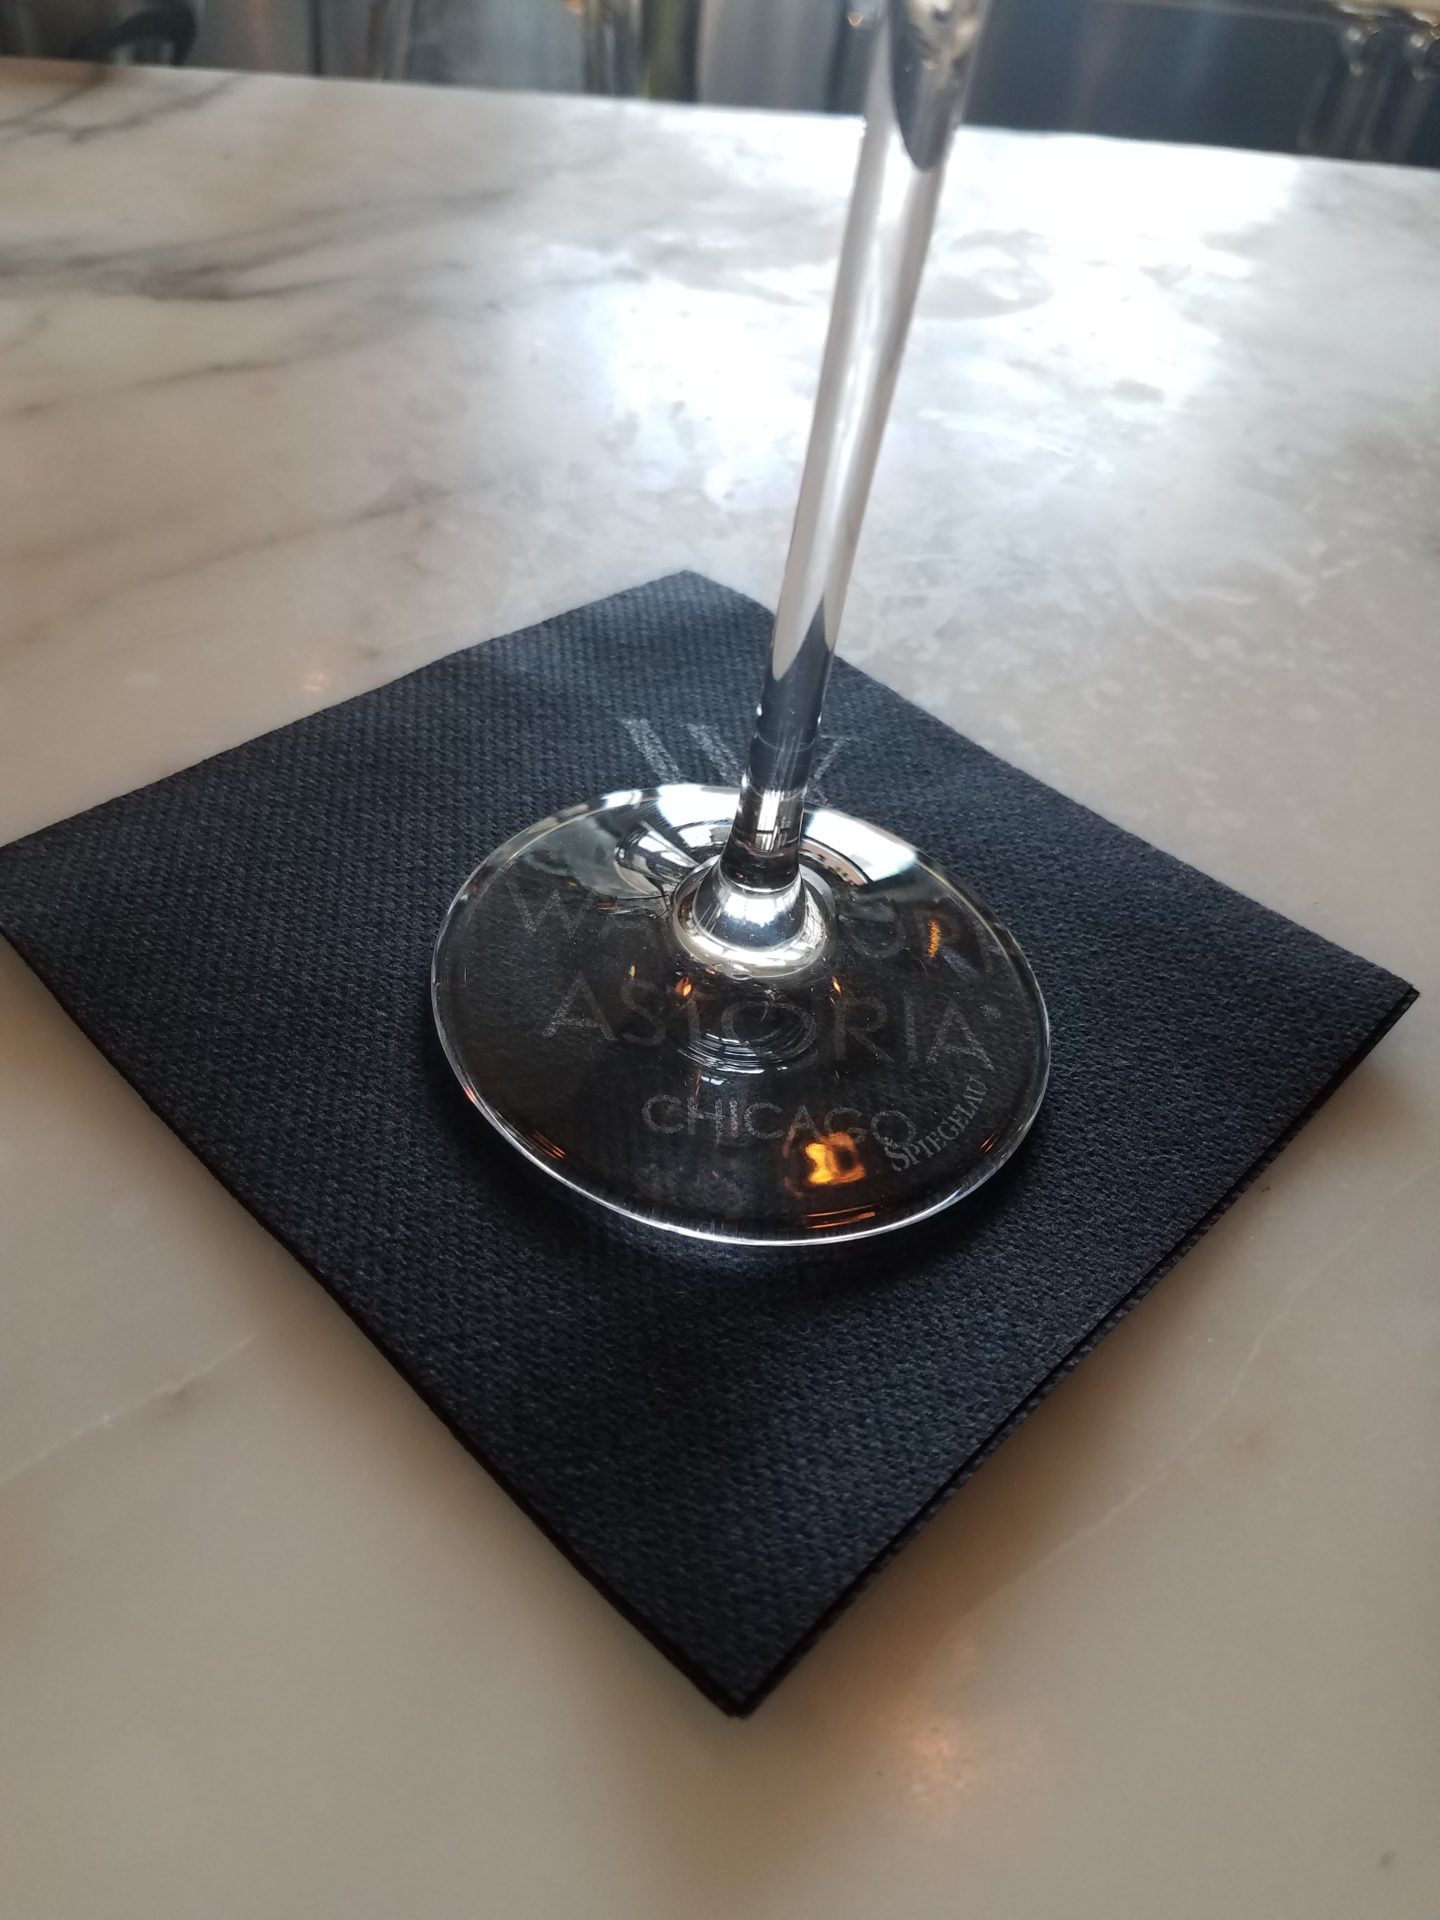 a glass on a napkin